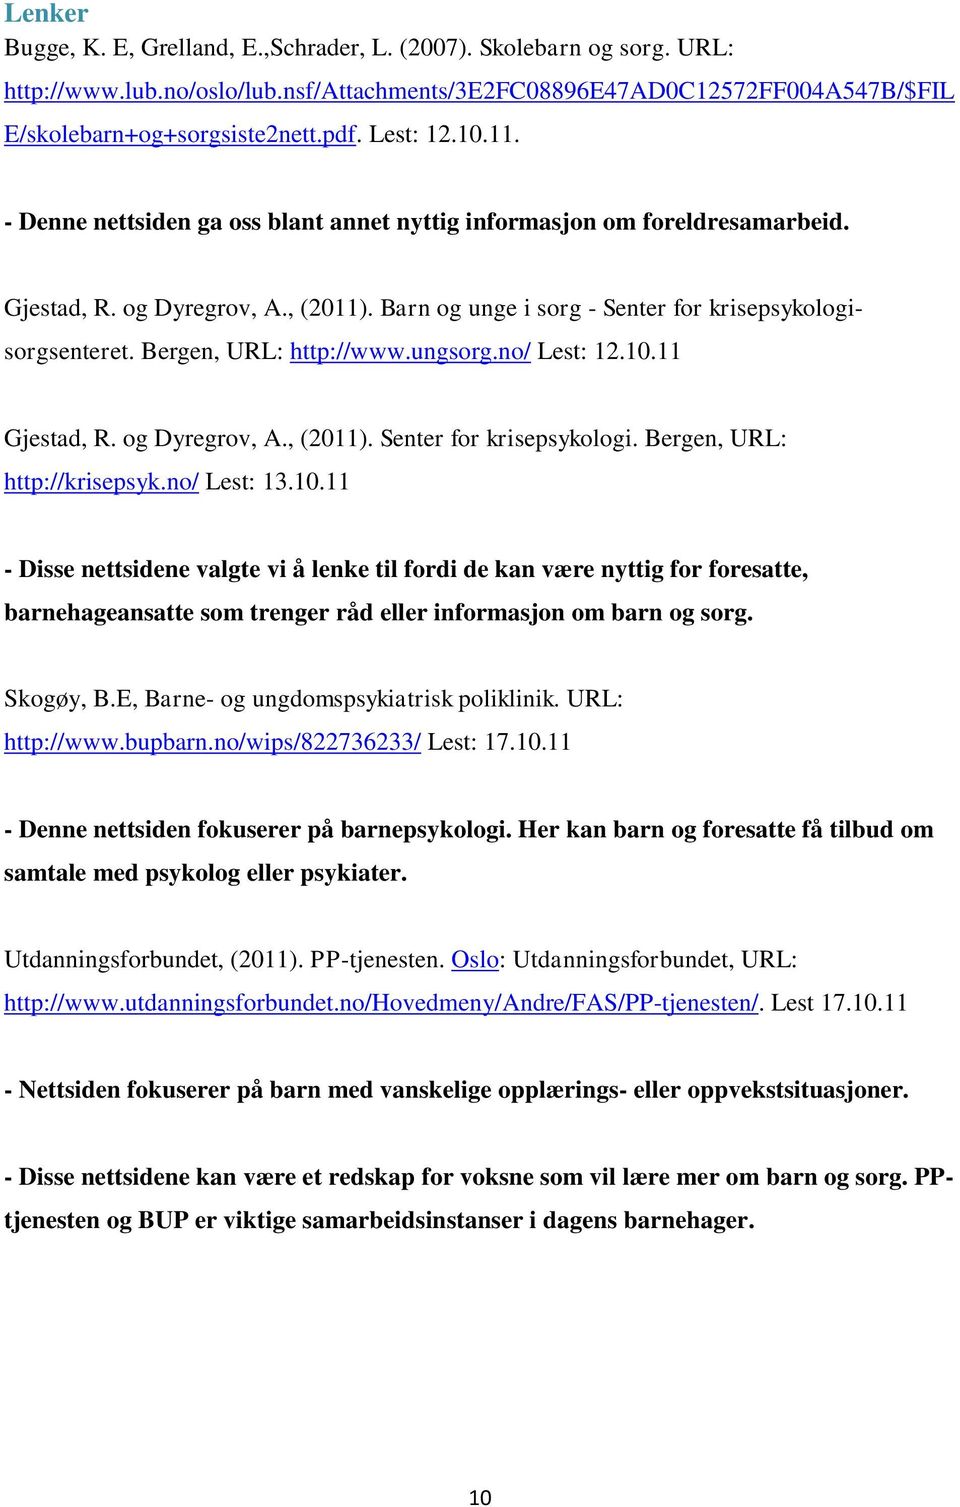 Bergen, URL: http://www.ungsorg.no/ Lest: 12.10.11 Gjestad, R. og Dyregrov, A., (2011). Senter for krisepsykologi. Bergen, URL: http://krisepsyk.no/ Lest: 13.10.11 - Disse nettsidene valgte vi å lenke til fordi de kan være nyttig for foresatte, barnehageansatte som trenger råd eller informasjon om barn og sorg.